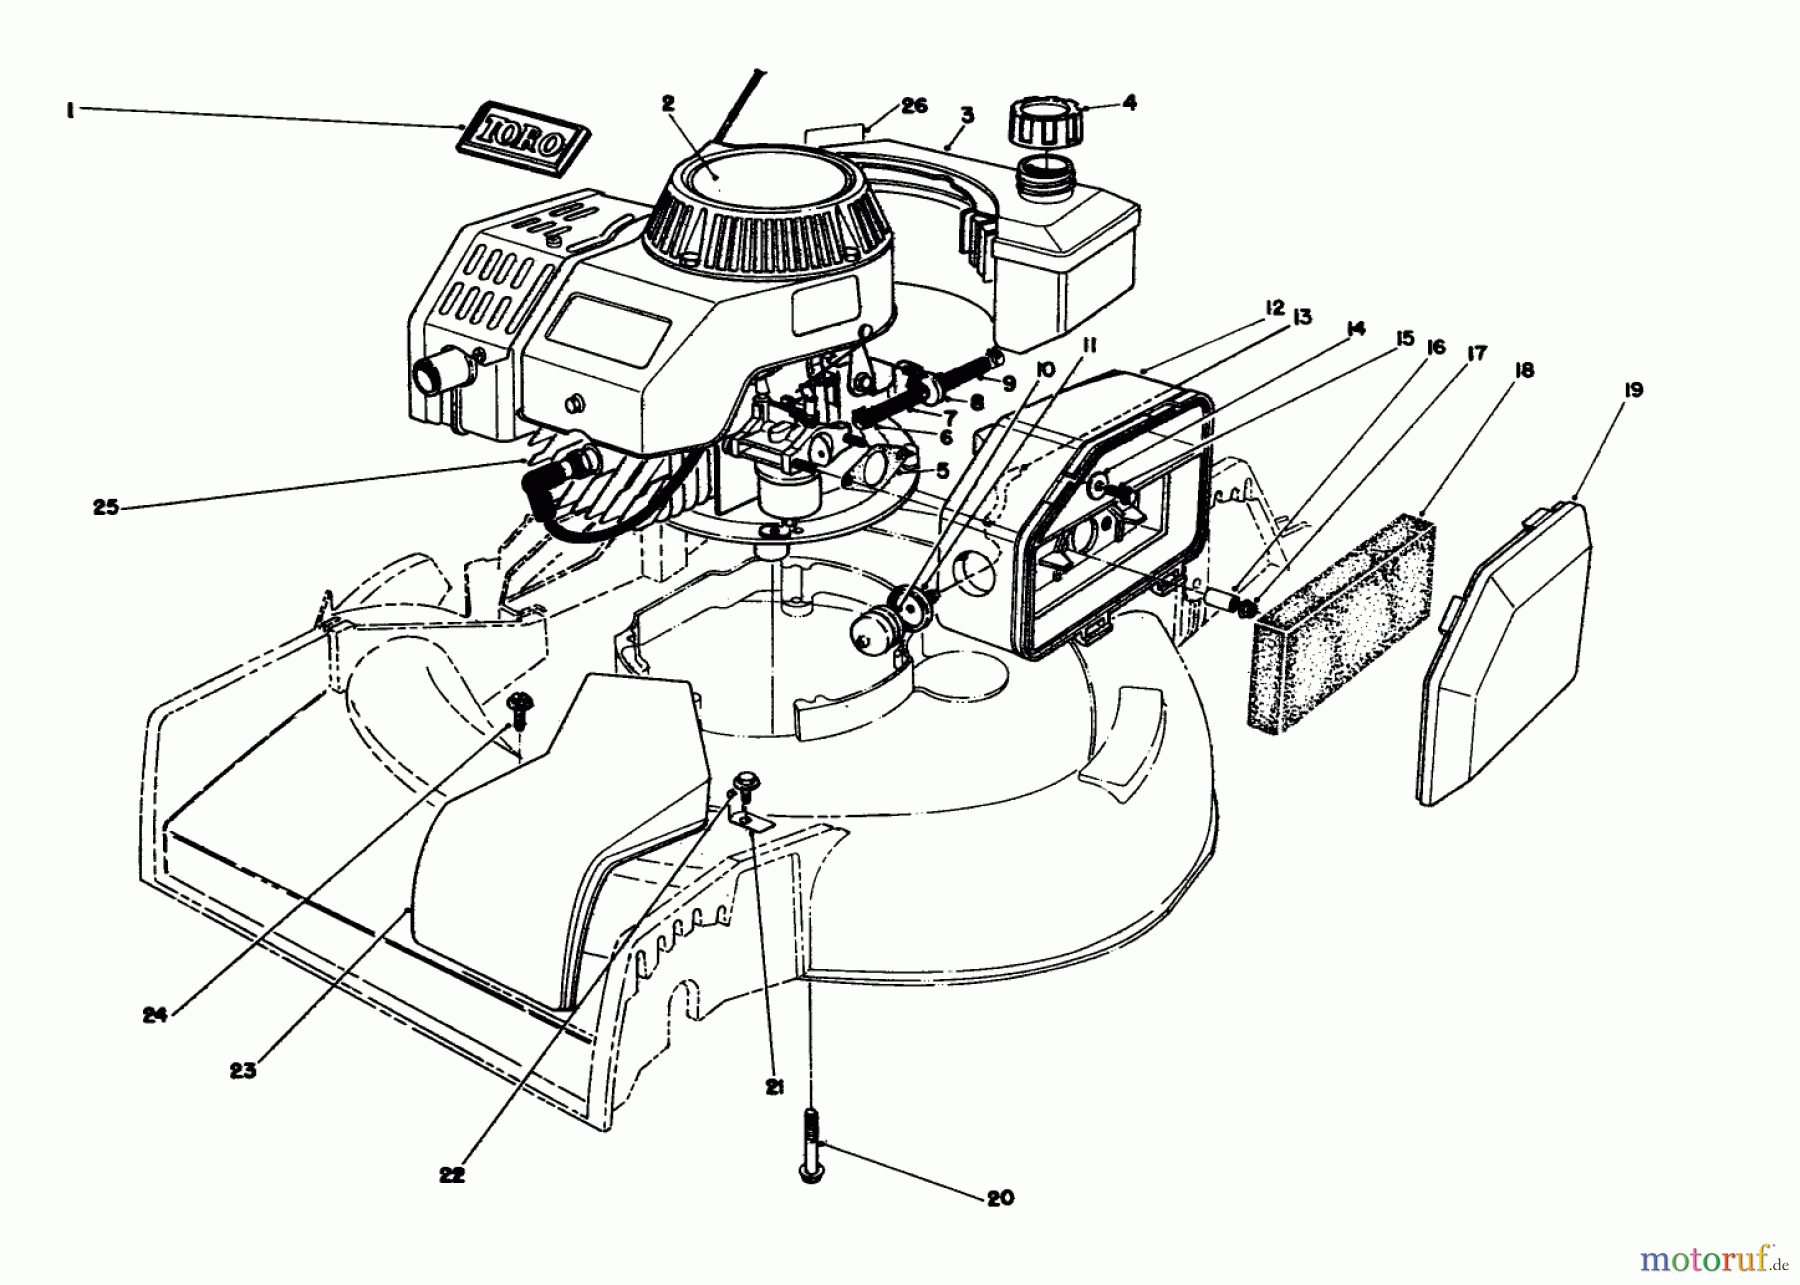  Toro Neu Mowers, Walk-Behind Seite 1 16212CG - Toro Lawnmower, 1989 (9000001-9999999) ENGINE ASSEMBLY